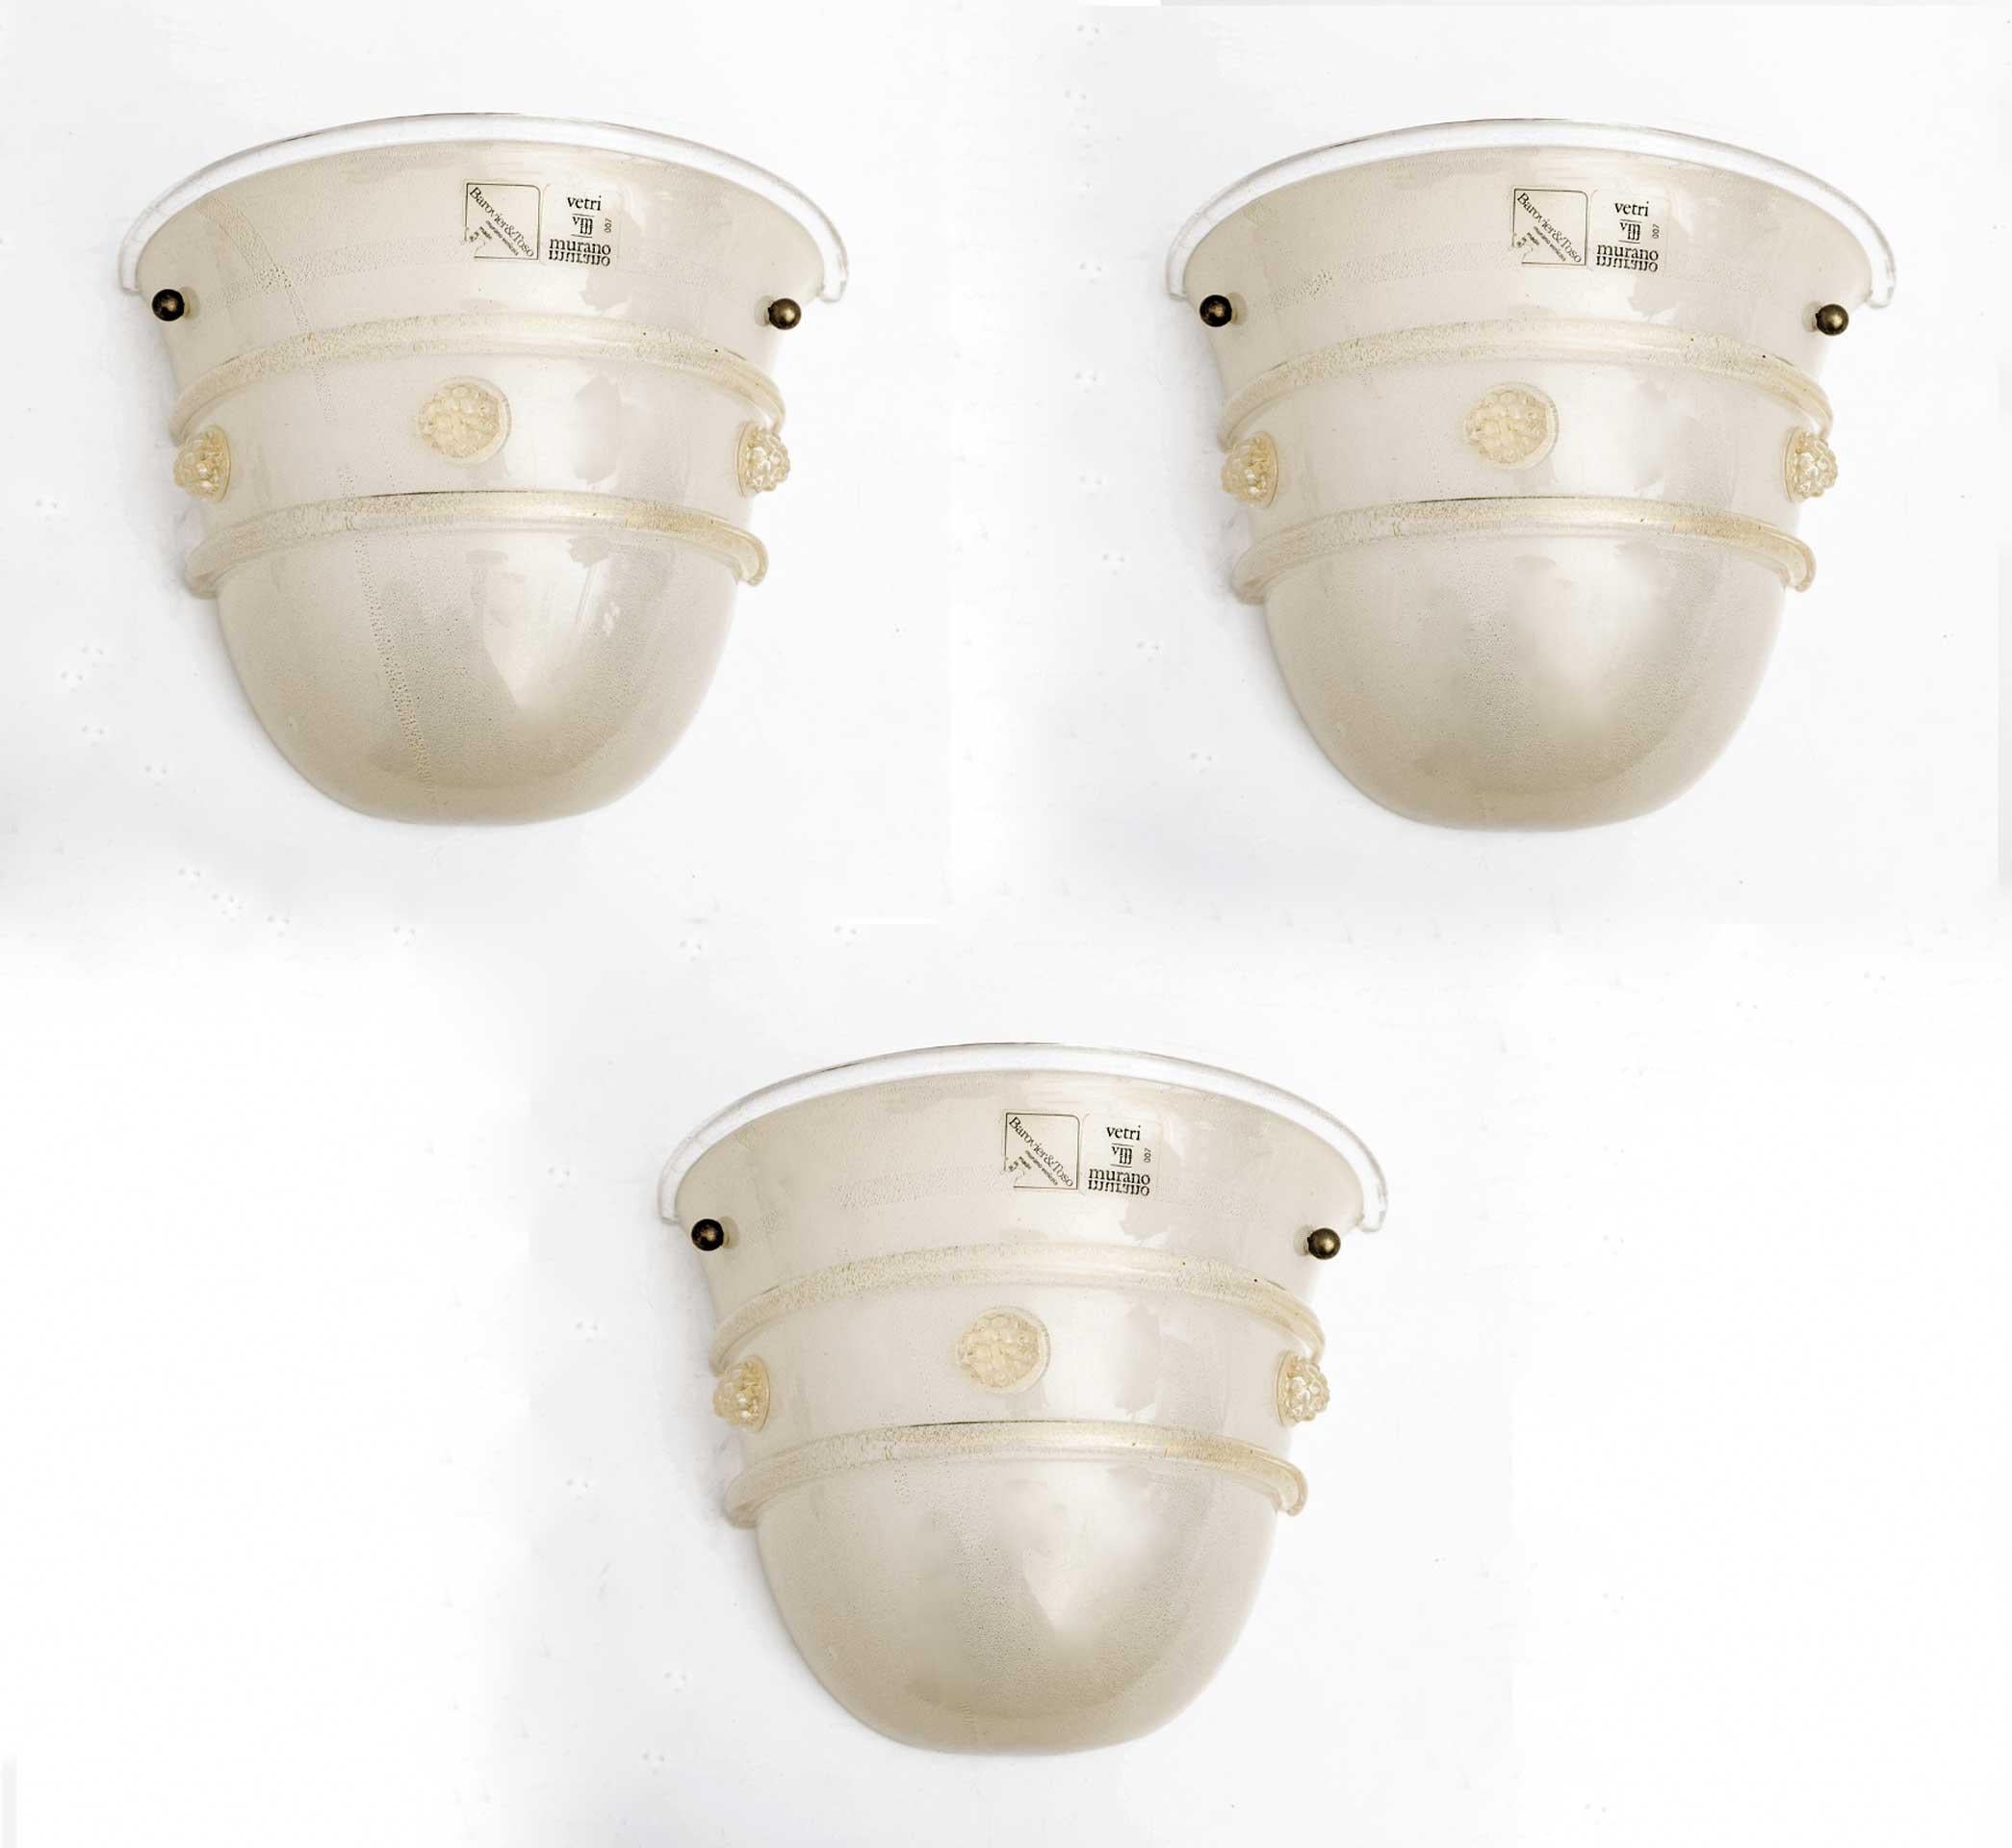 Ensemble de trois appliques en verre de Murano soufflé à la main, de style Mid-Century Modern, produit par Barovier&Toso dans les années 1980. Avec des détails en forme de fleurs. Le verre est rempli de bulles et de mouchetures dorées qui lui